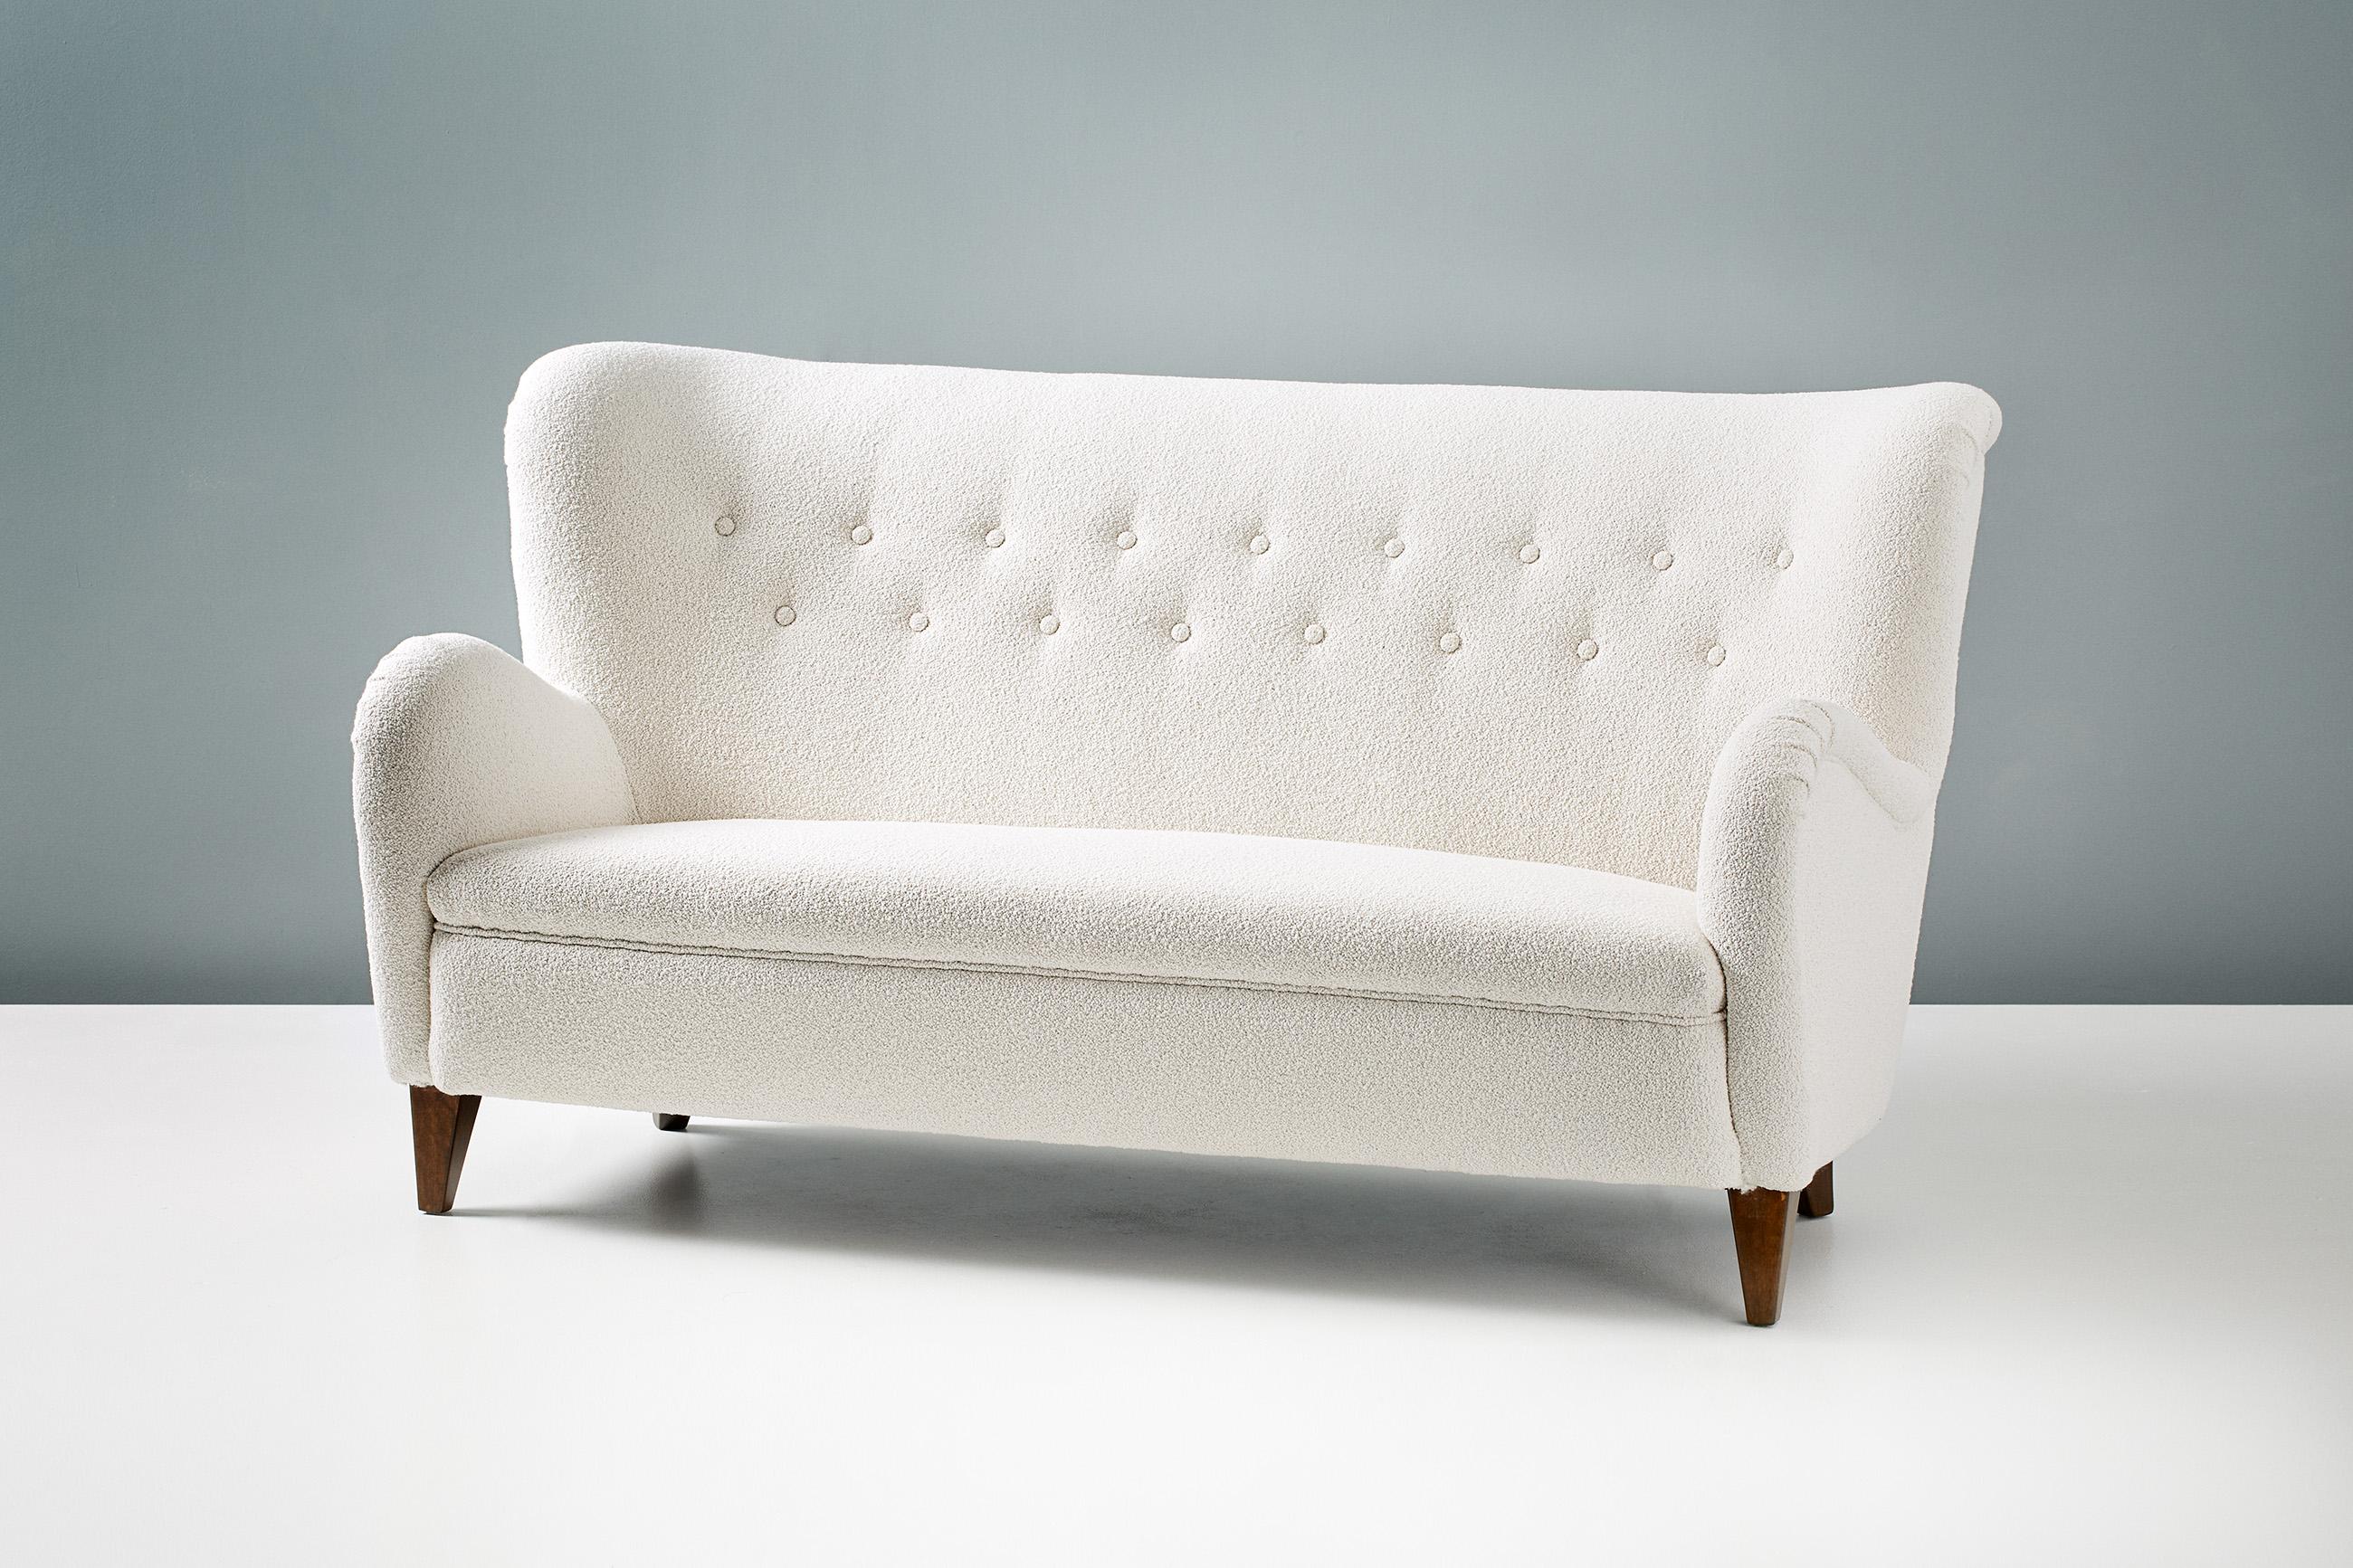 Finnischer Kunsttischler

Geschwungenes Sofa, 1940er Jahre.

Geschwungenes Sofa, hergestellt in Finnland in den 1940er Jahren. Das Sofa hat geschnitzte, gebeizte Ulmenholzbeine und wurde mit einem luxuriösen Bouclé-Stoff aus einer